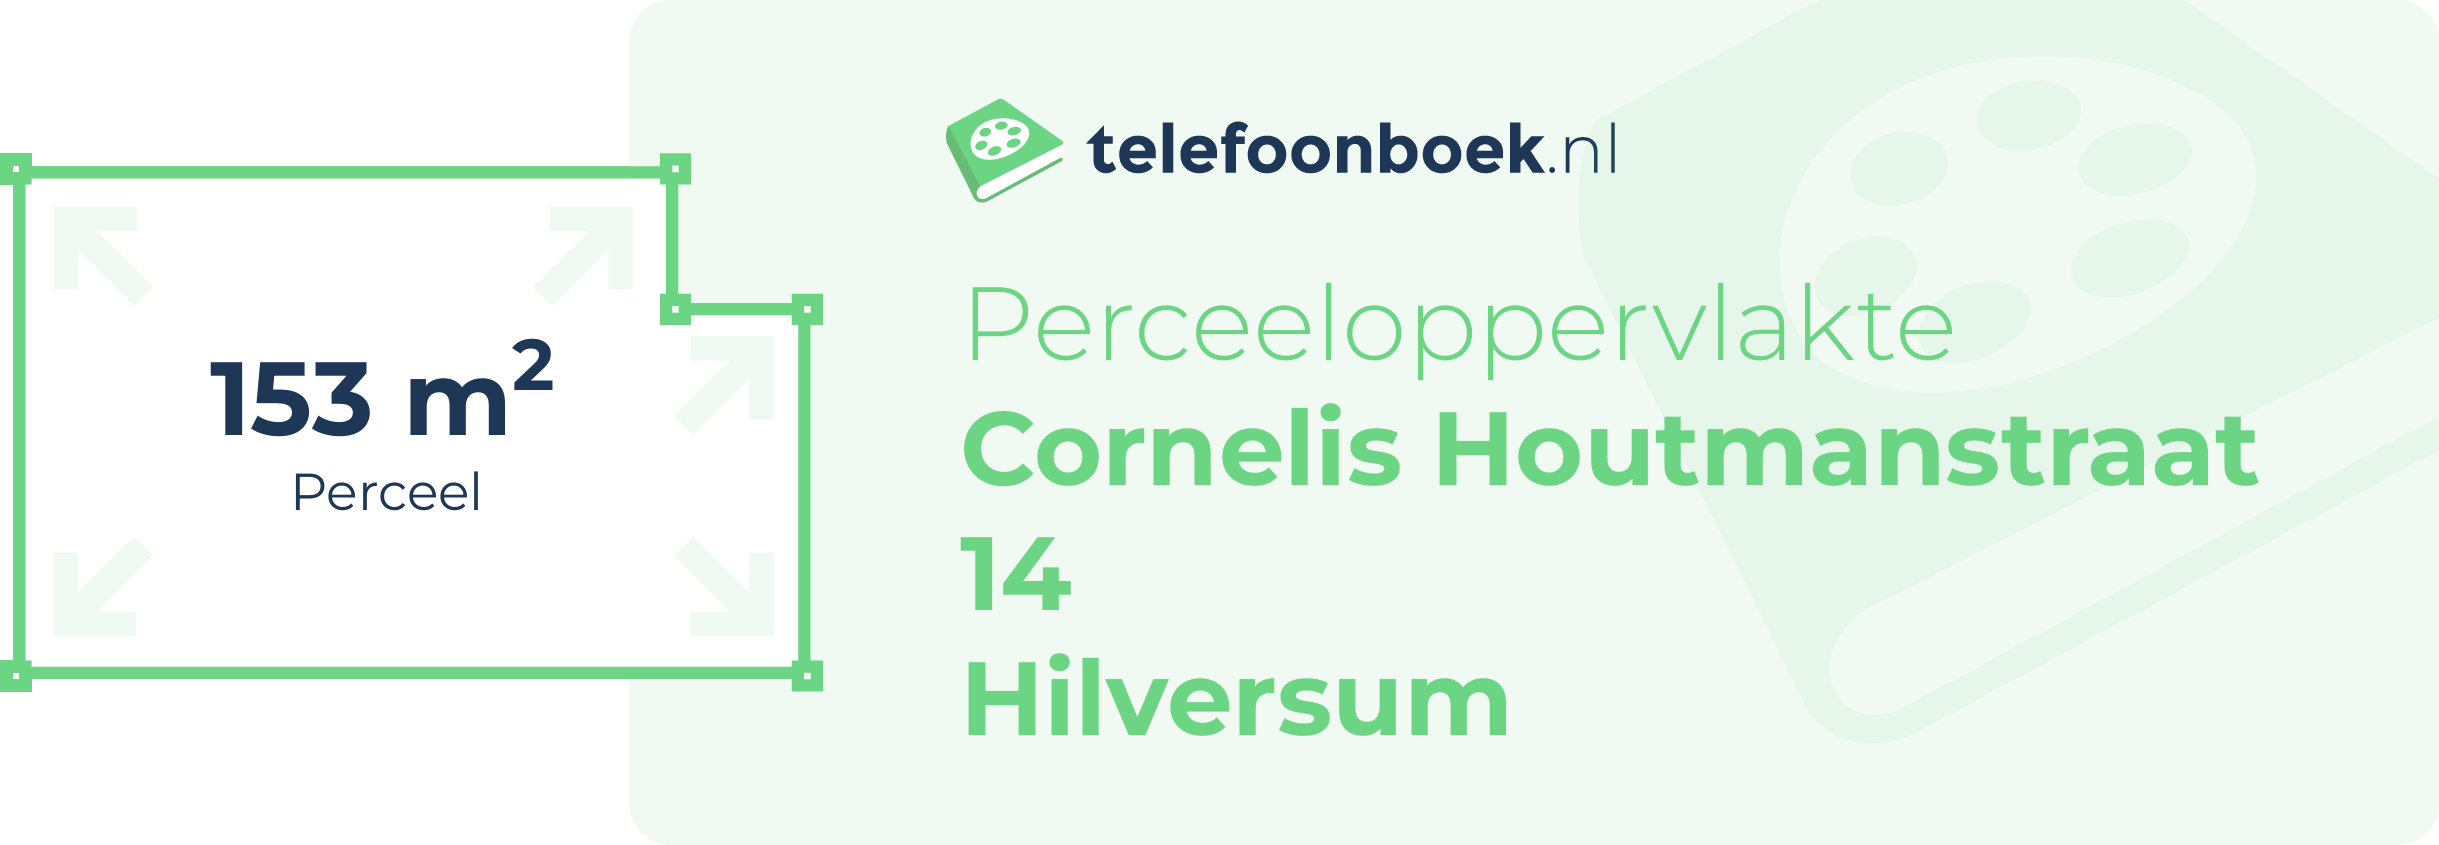 Perceeloppervlakte Cornelis Houtmanstraat 14 Hilversum